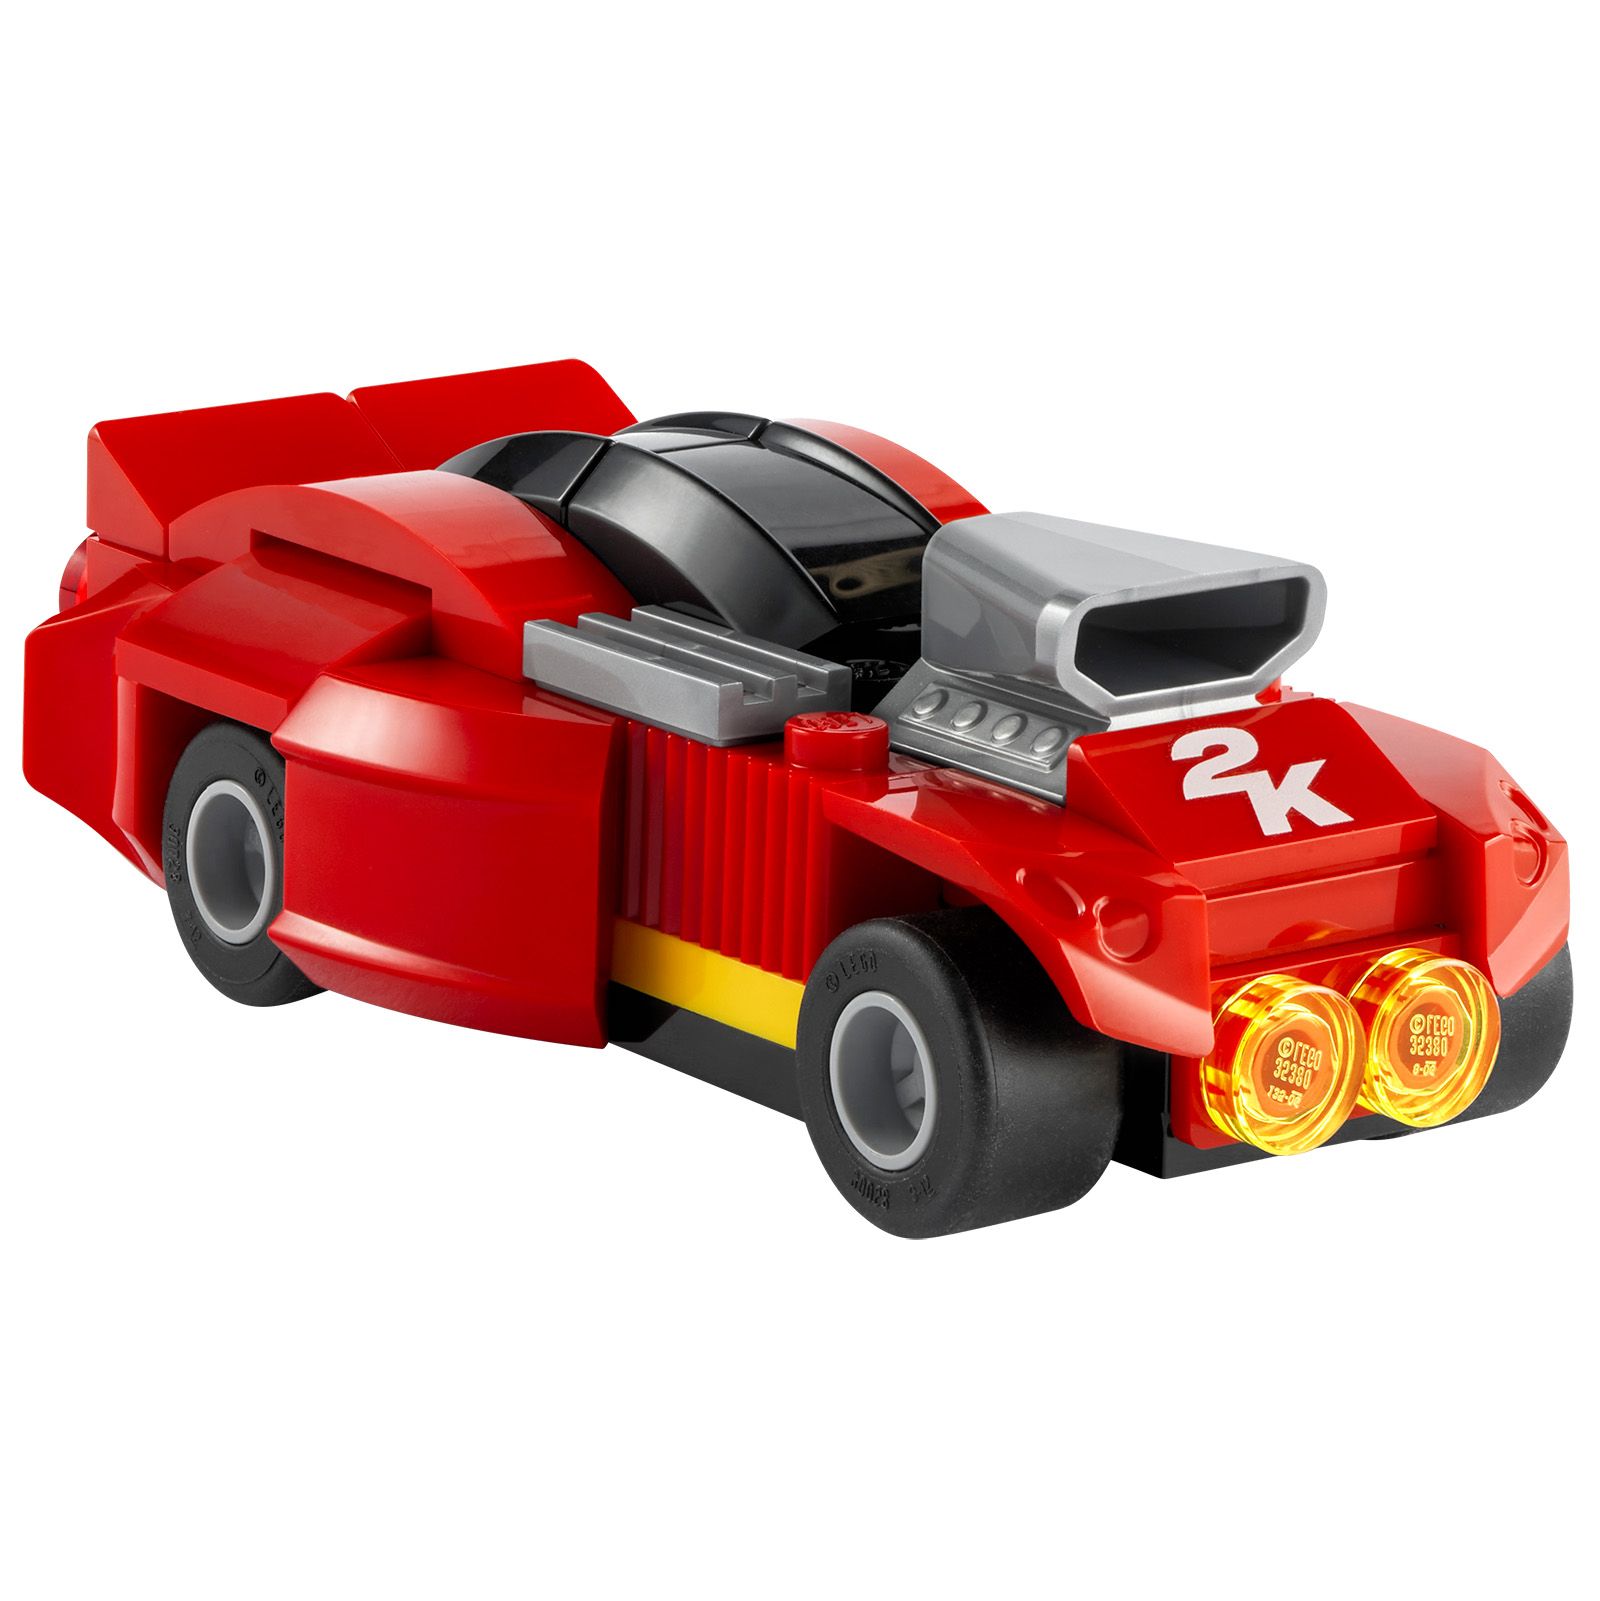 LEGO 2K Drive: kerru og LEGO vara í boði með ákveðnum líkamlegum útgáfum af tölvuleiknum